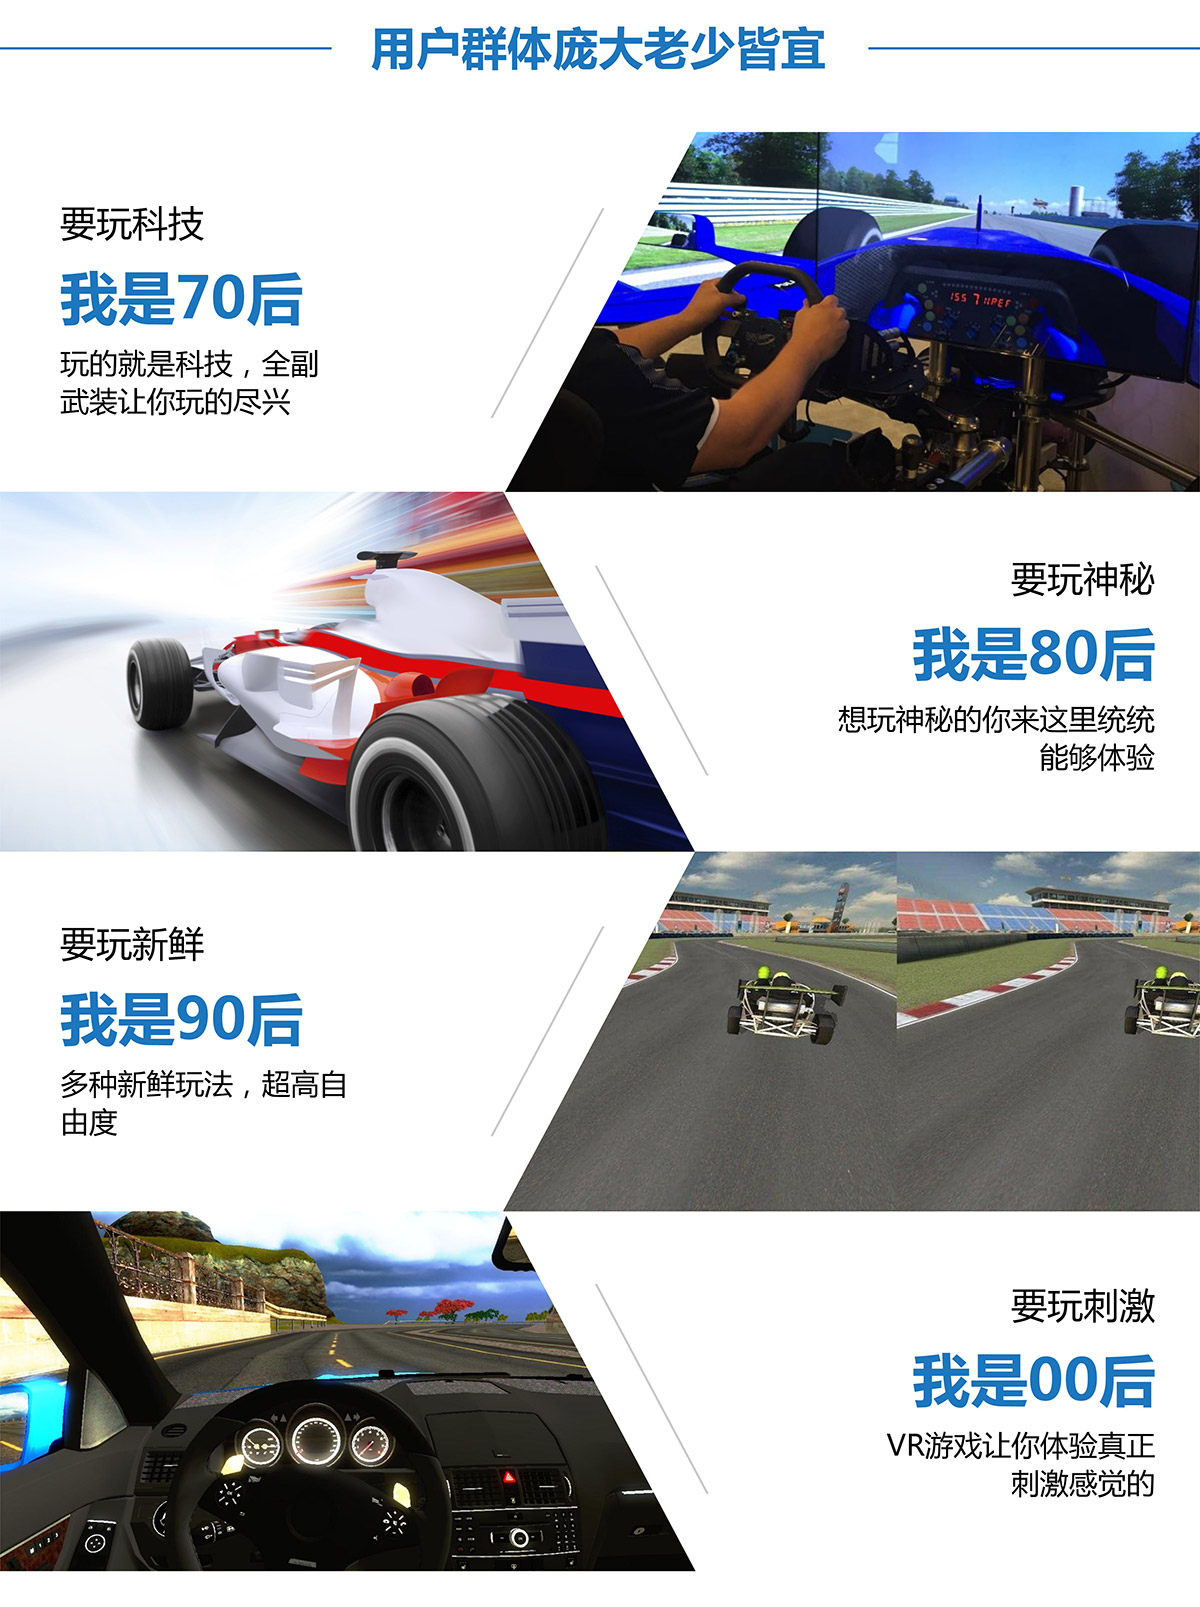 广东省广州奇影幻境VR赛车用户群体庞大老少皆宜.jpg